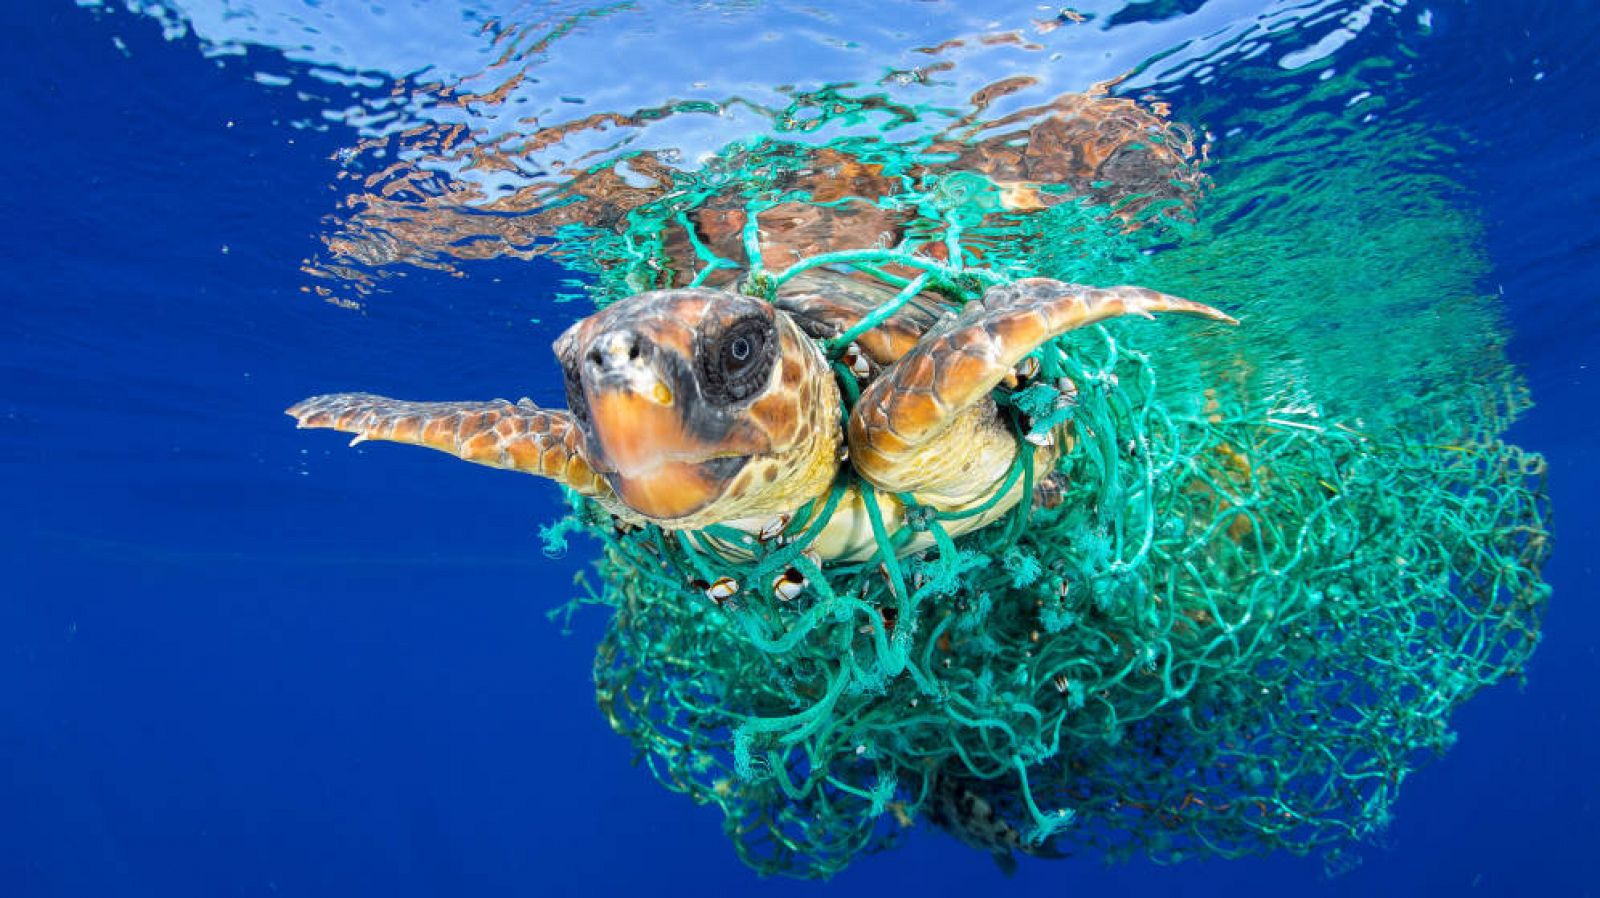 Retrato de Francis Pérez de una tortuga atrapada en plástico, ganador de World Press Photo